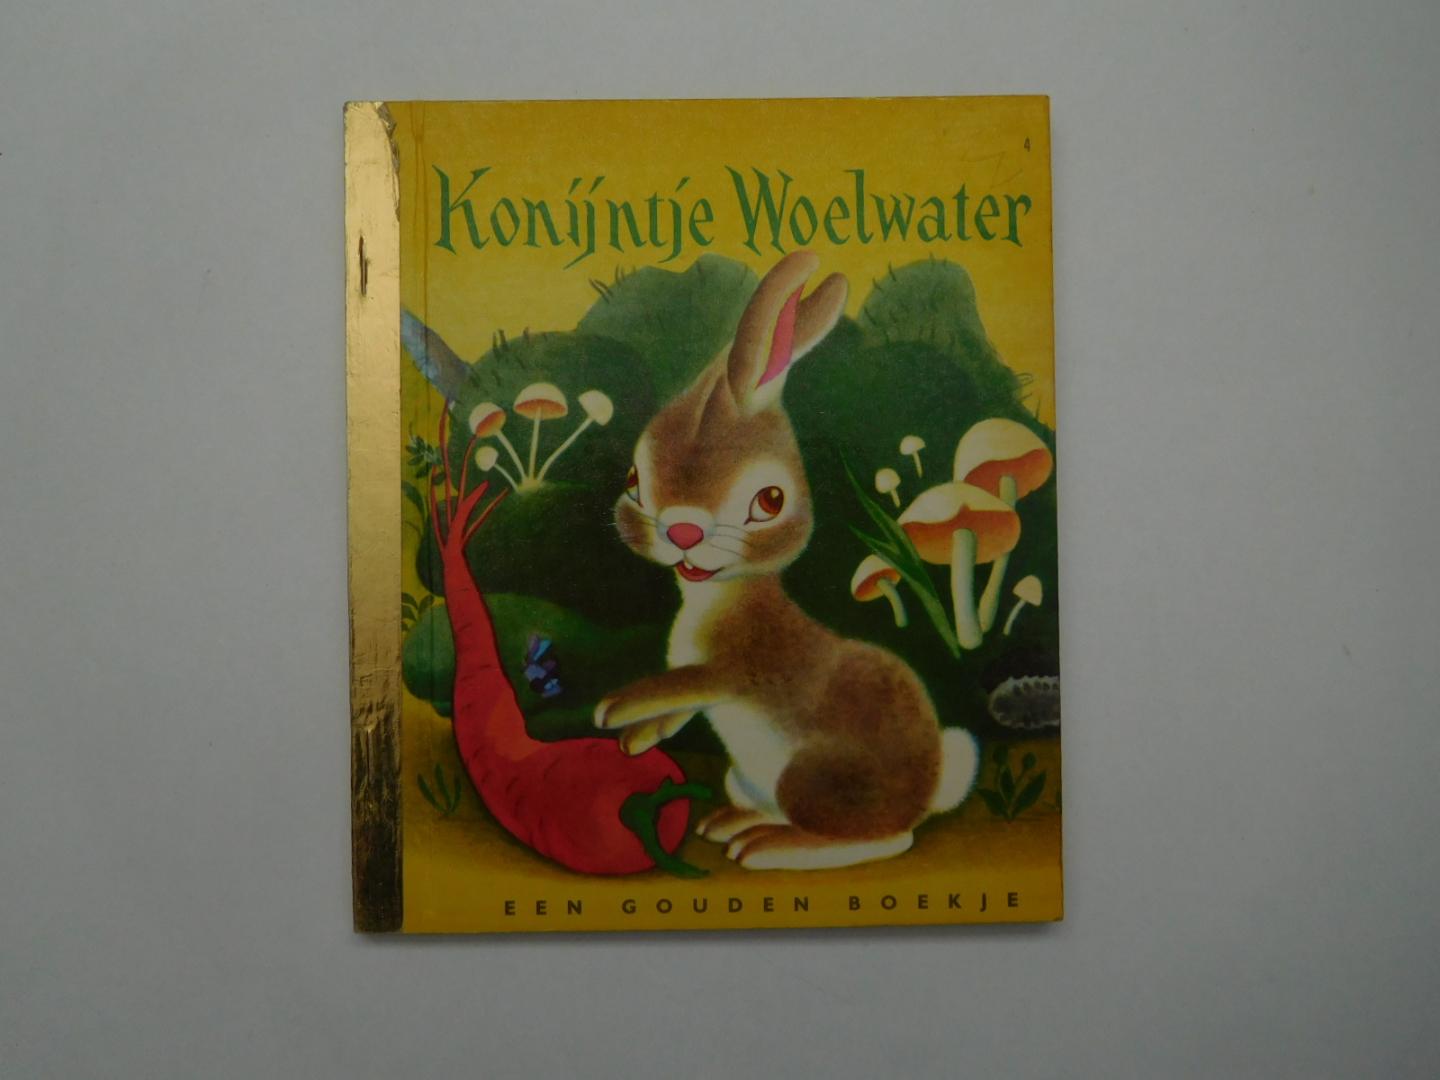 Han G. Hoekstra - Konijntje Woelwater, nr 4 in de reeks Gouden Boekjes van De Bezige Bij